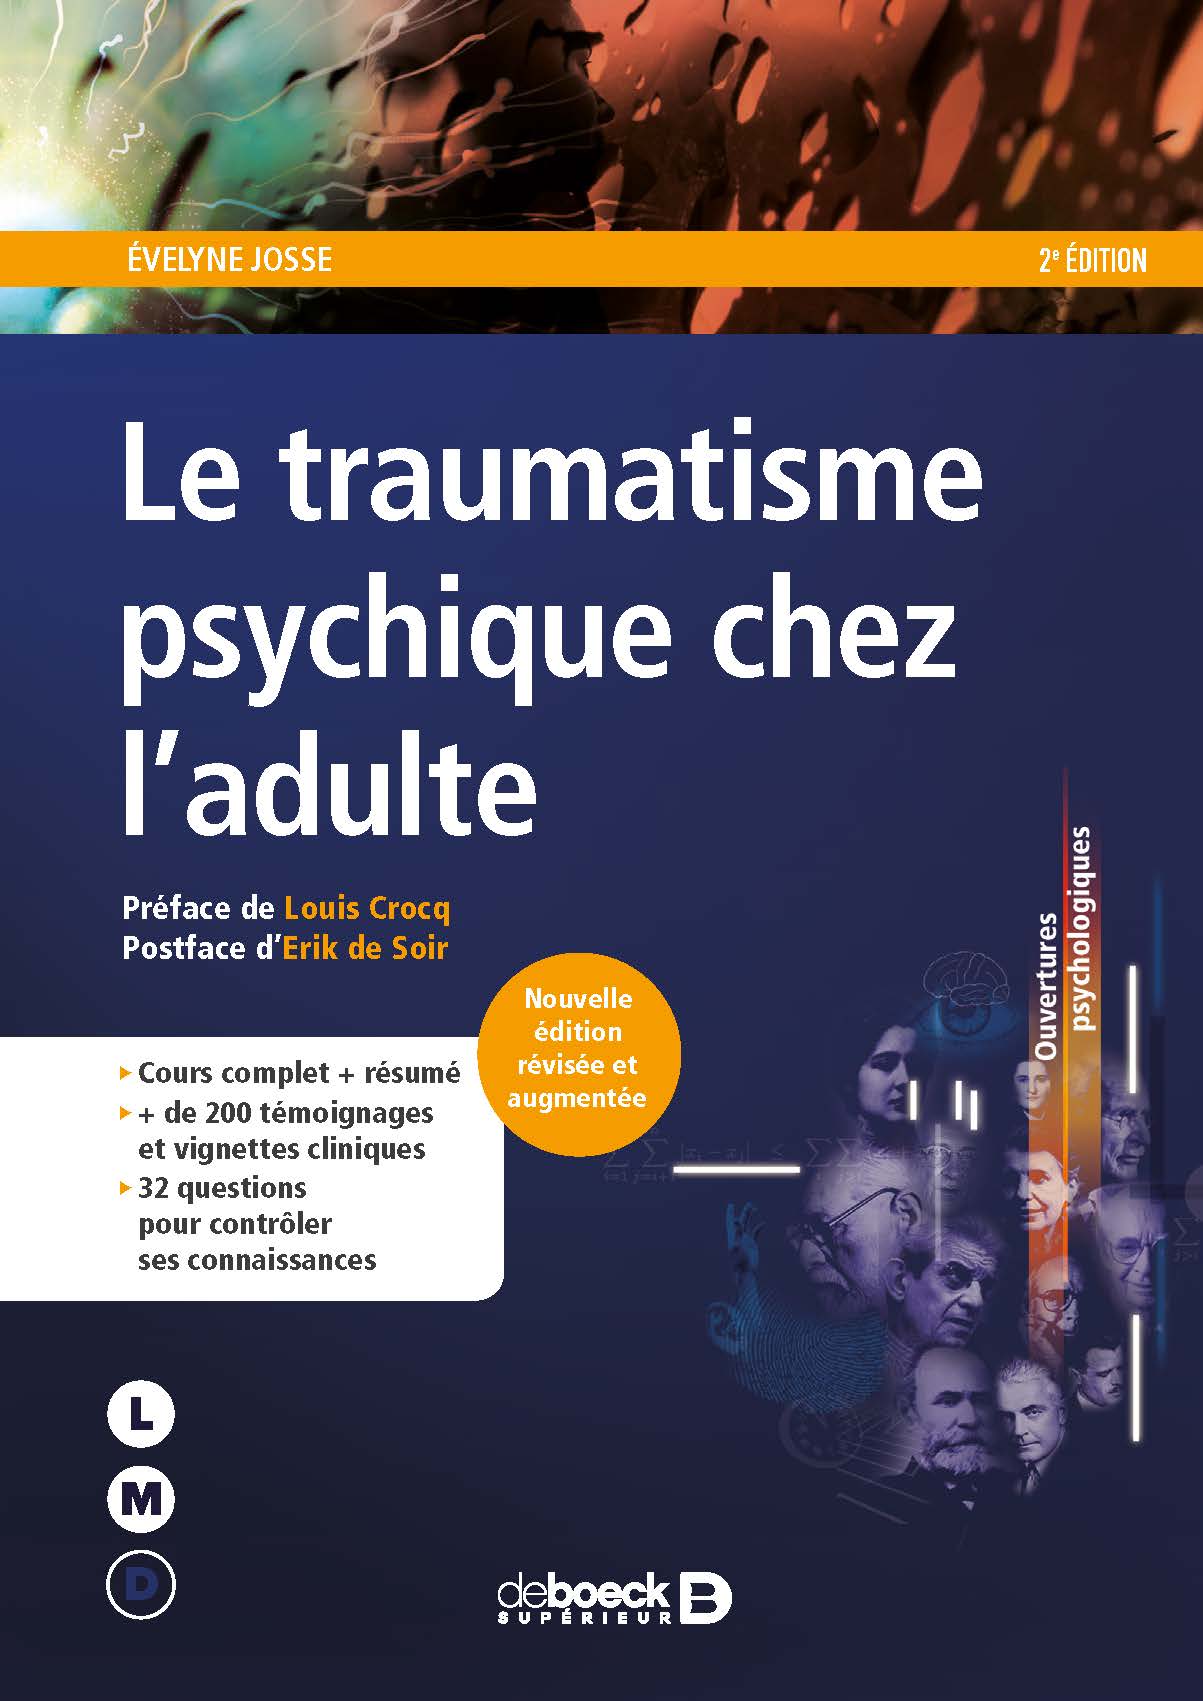 You are currently viewing 2ème édition : Le traumatisme psychique chez l’adulte, un livre d’Evelyne Josse, préface du Professeur Louis Crocq, postface du Major Erik De Soir